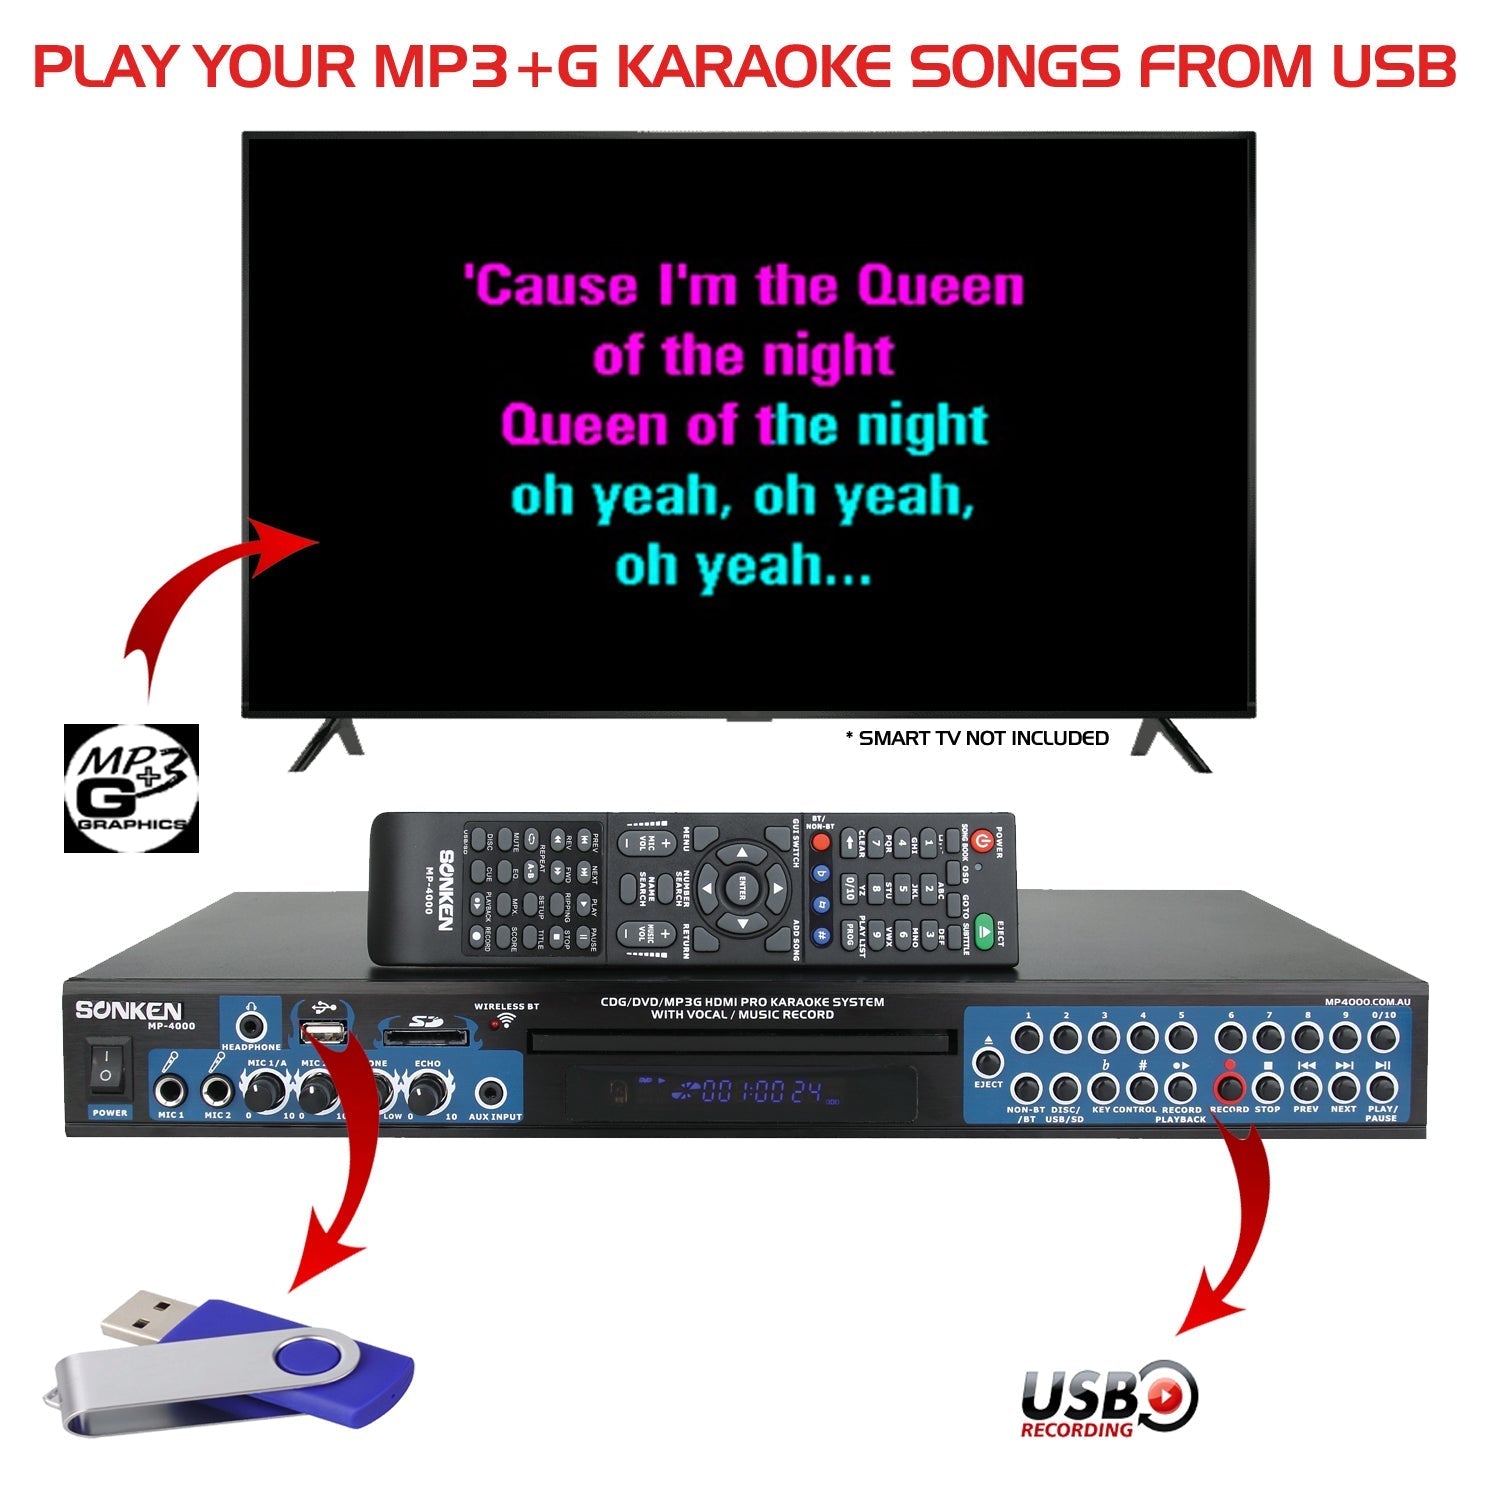 Sonken MP4000 Pro Karaoke Machine + 420 Songs from the 80's & 90's + 2 Wireless Microphones - Karaoke Home Entertainment